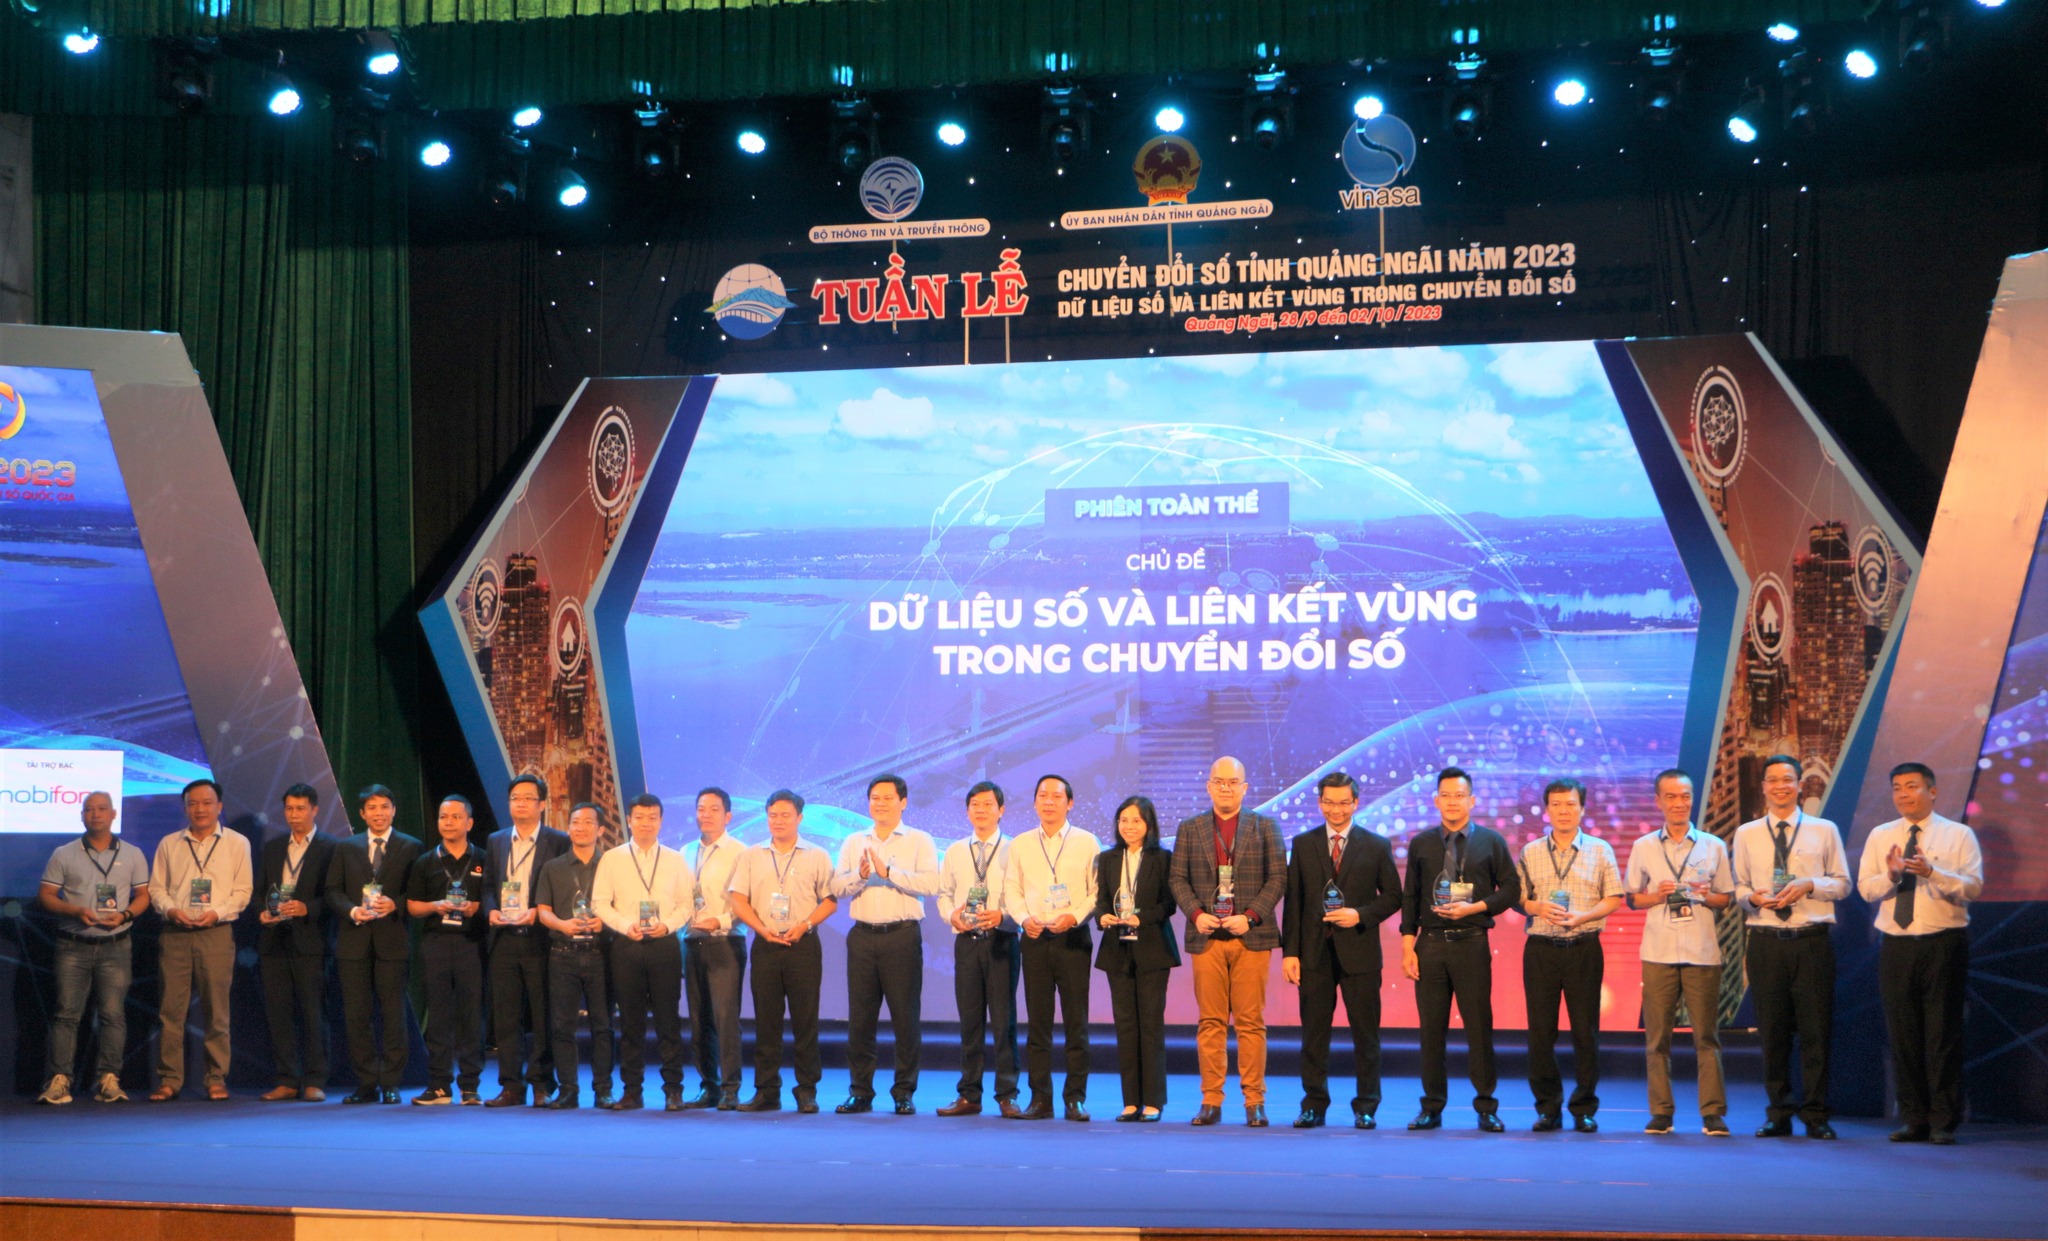 Trao kỉ niệm chương cho các diễn giả tham gia Tuần lễ Chuyển đổi số tỉnh Quảng Ngãi năm 2023